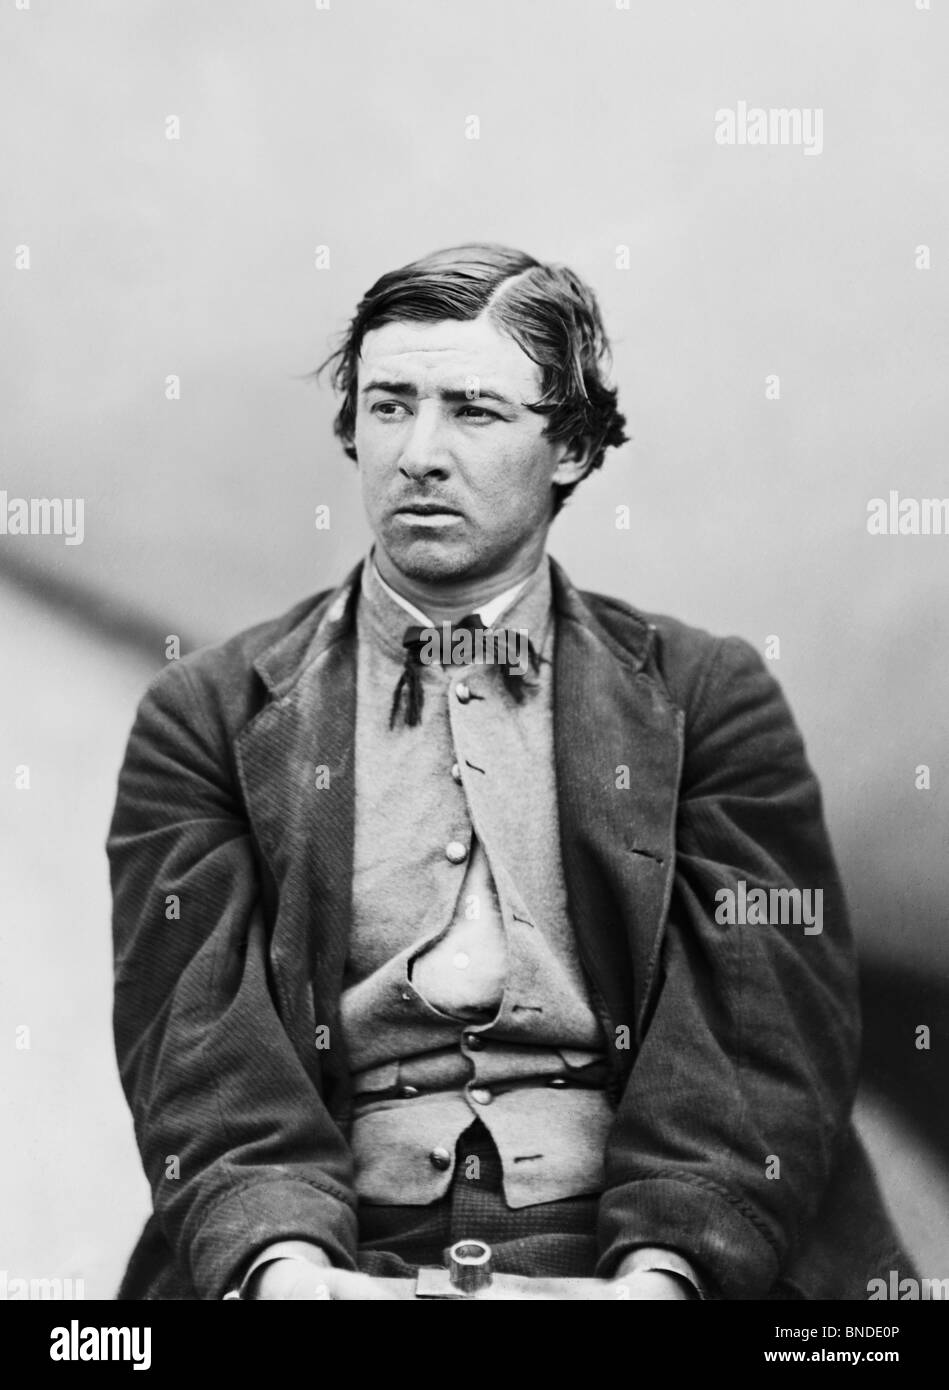 Verschwörer David Herold in Eisen nach der Ermordung von US-Präsident Abraham Lincoln im April 1865 - Herold wurde später aufgehängt. Stockfoto